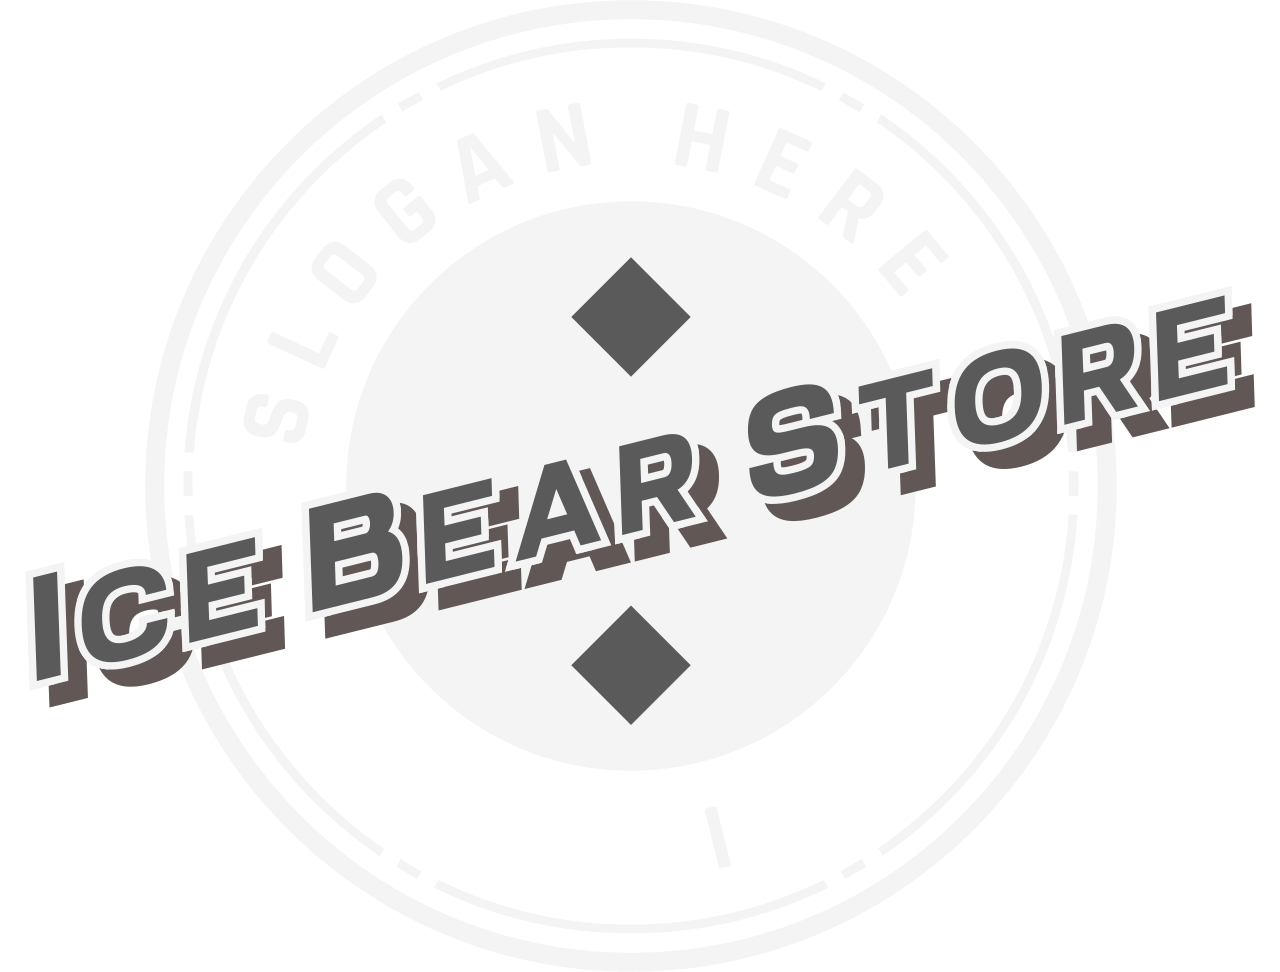 Ice Bear Store's logo